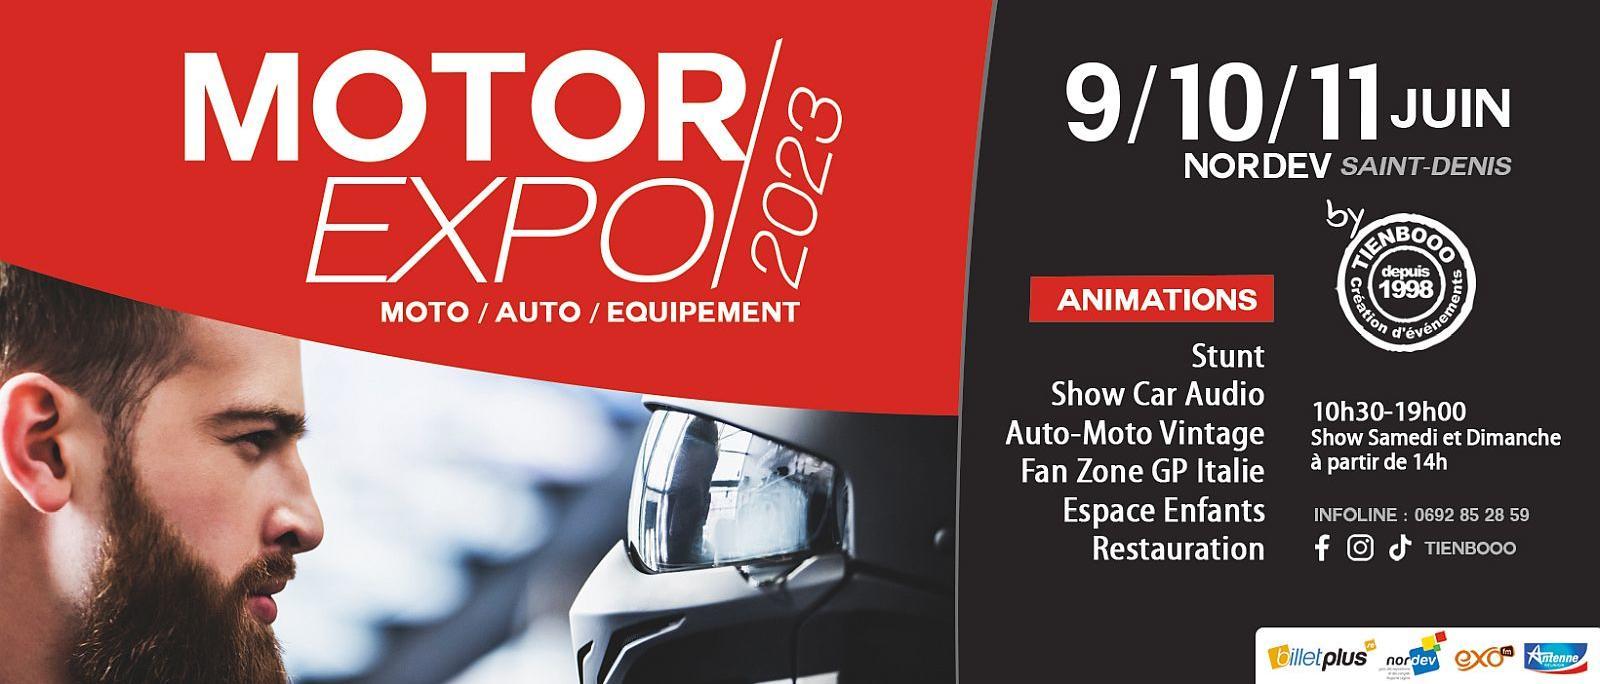 Motor Expo La Réunion